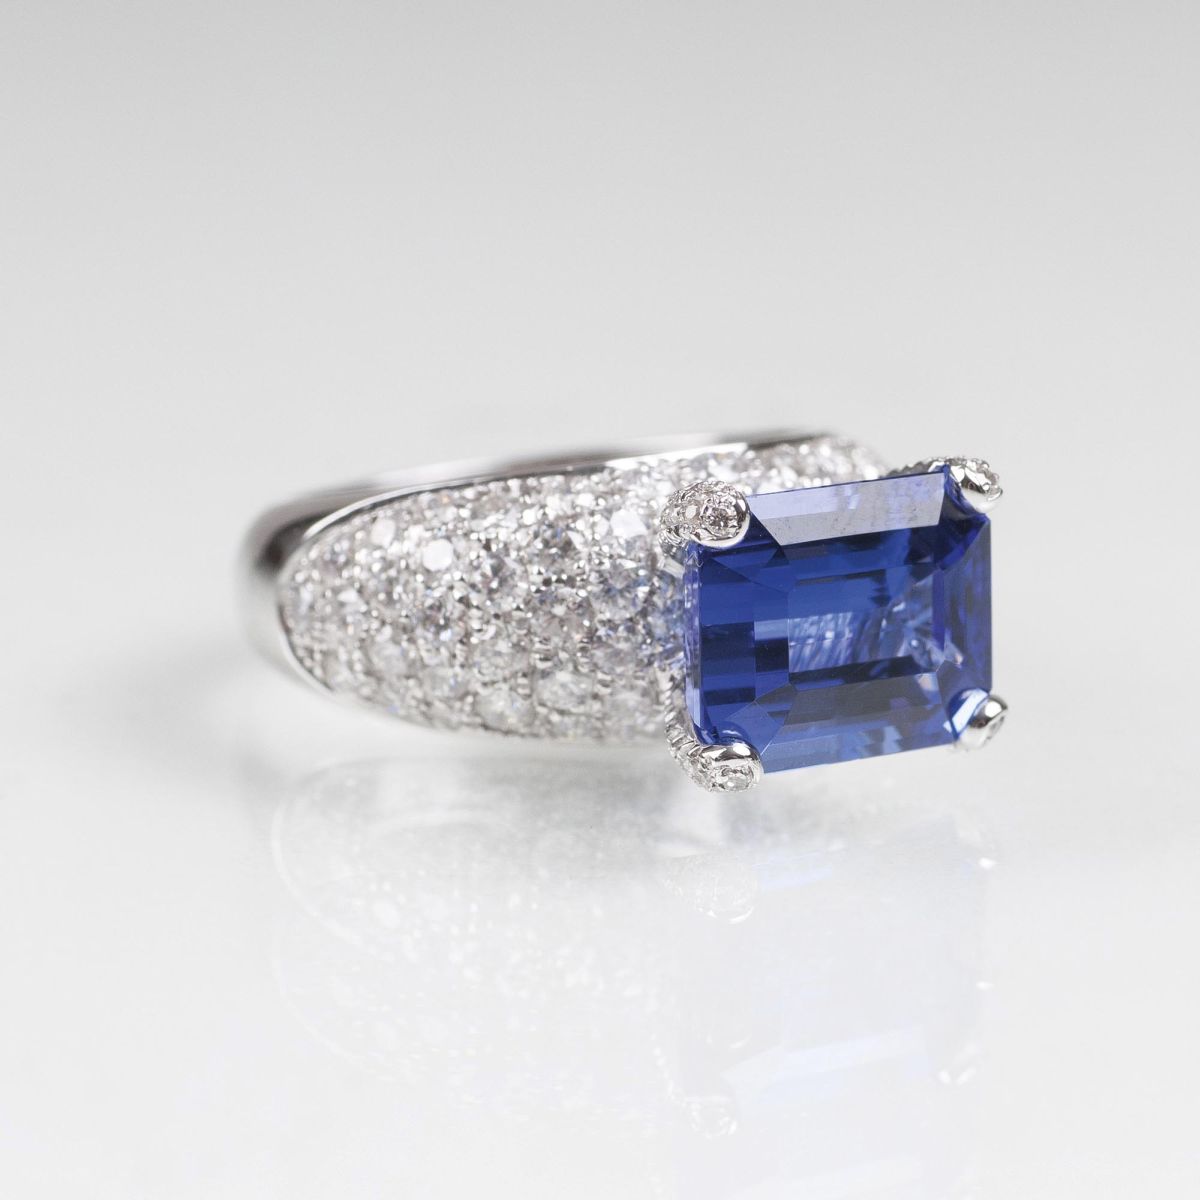 A fine Tanzanite Diamond Ring - image 2